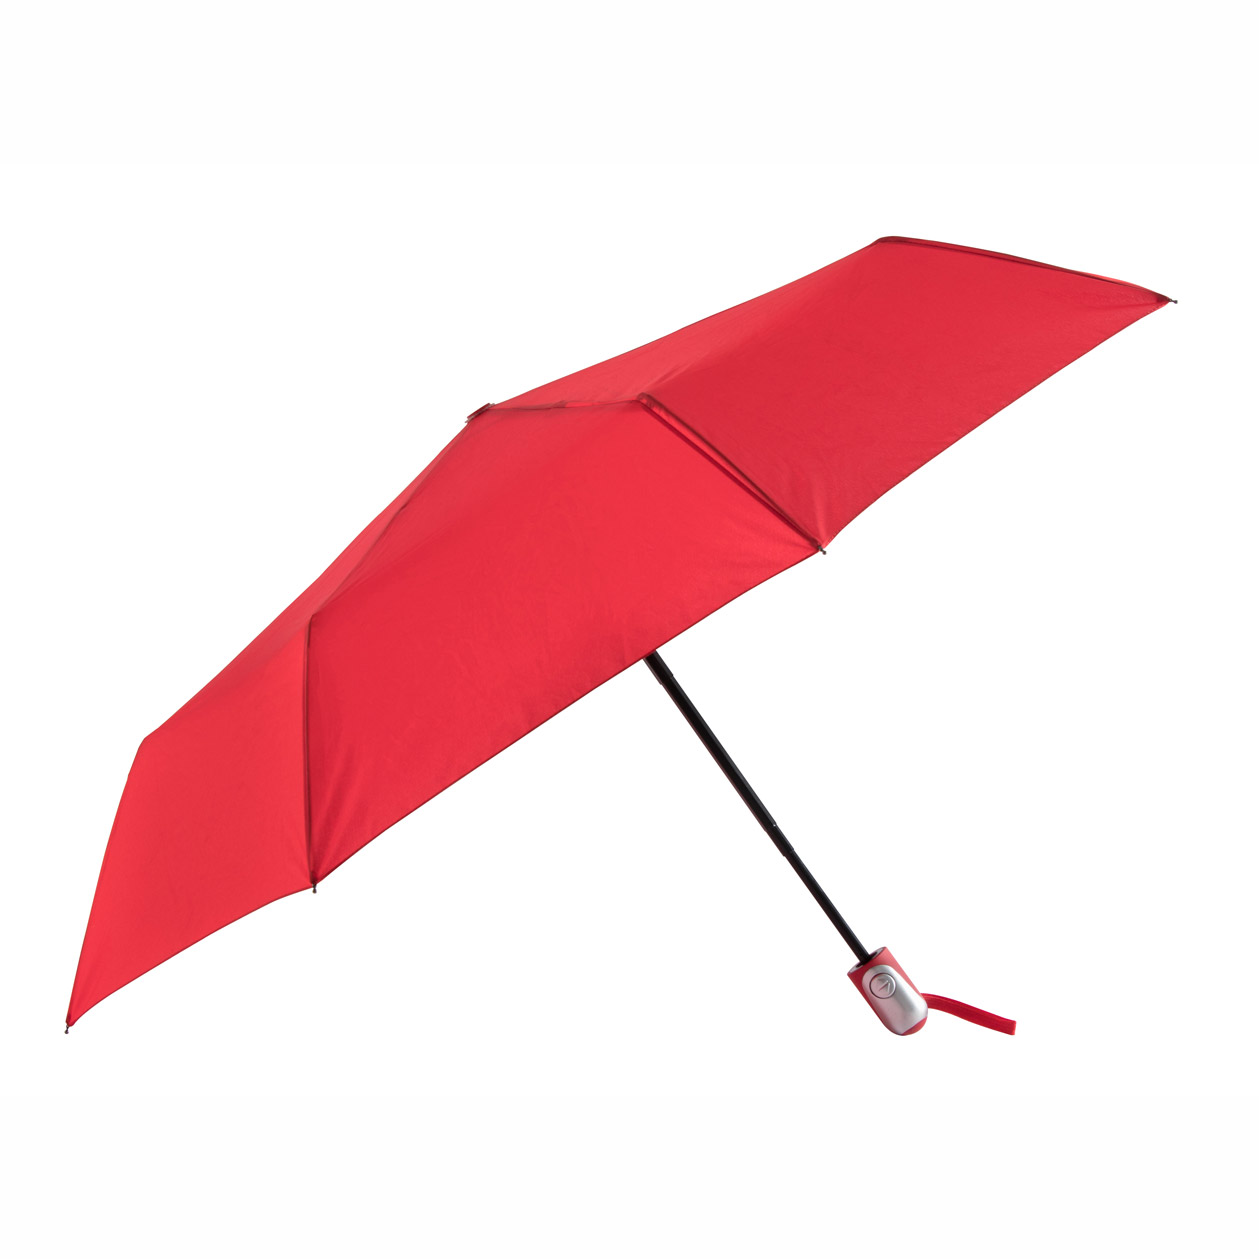 PM-08, Paraguas de bolsillo con sistema de apertura y cierre automático, Incluye funda